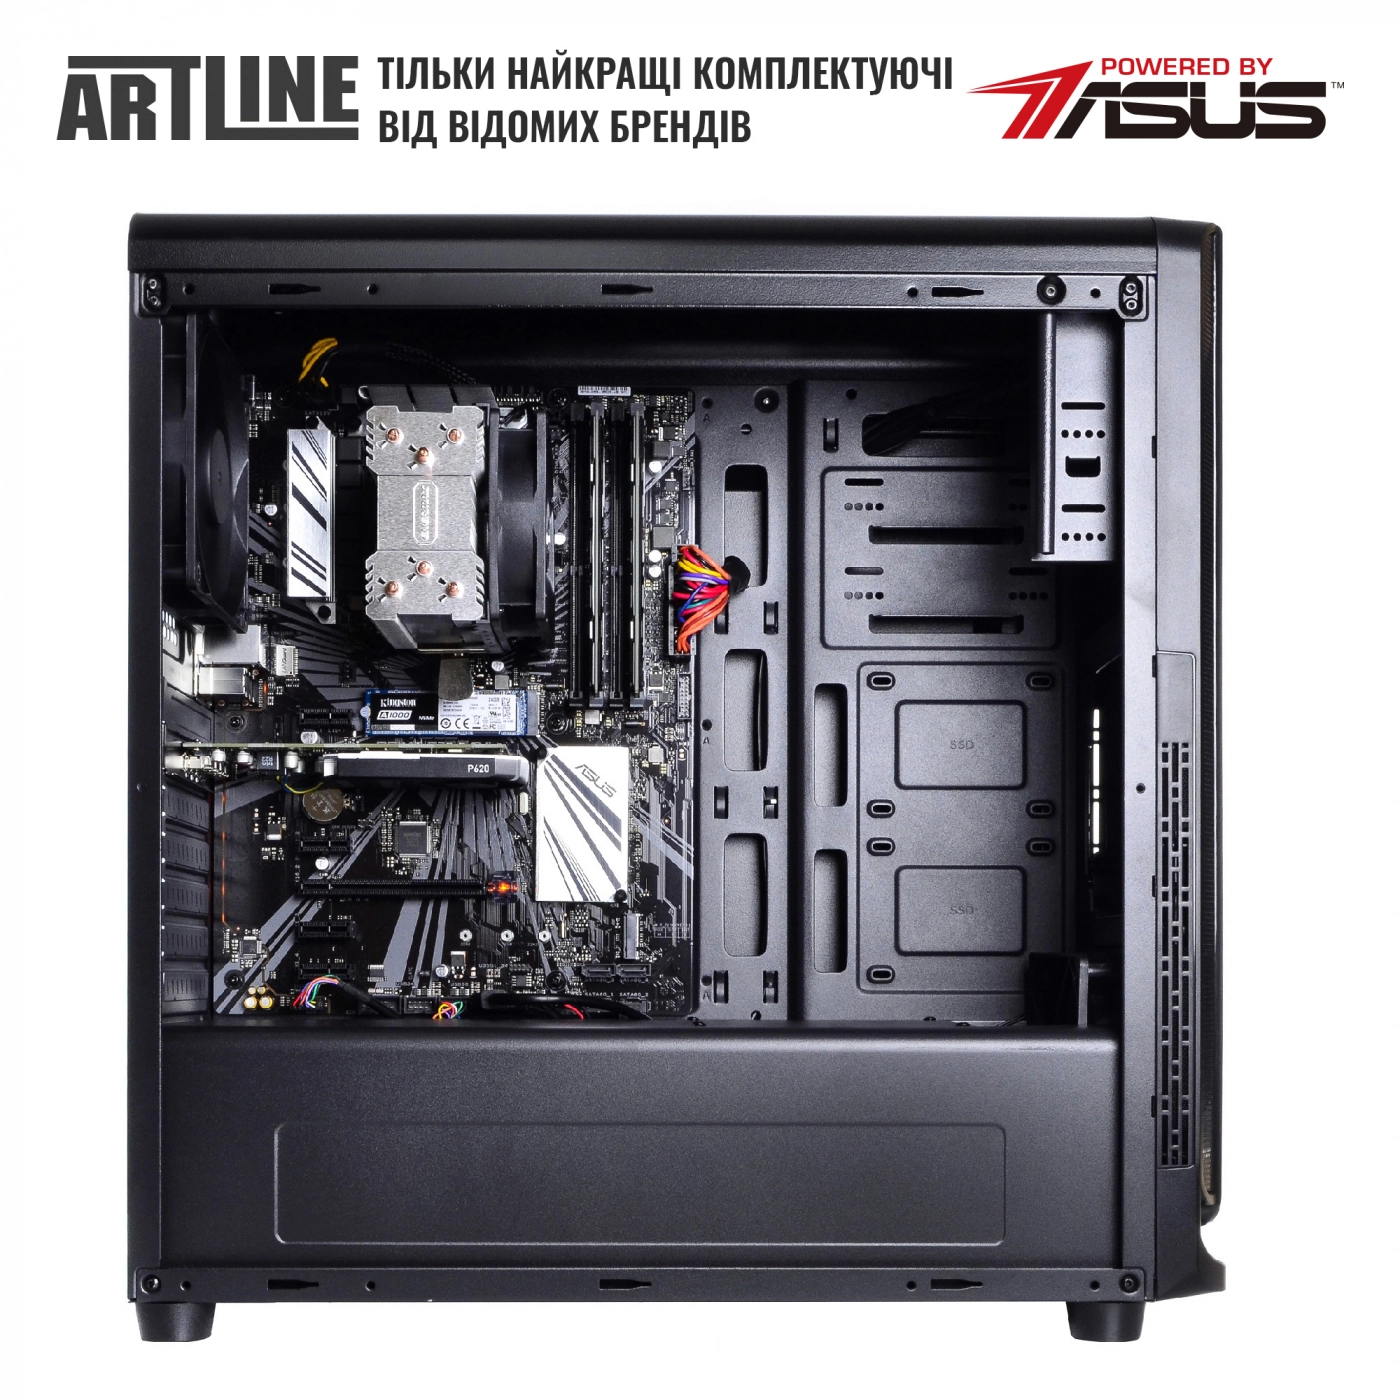 Купить Сервер ARTLINE Business T61v09 - фото 5